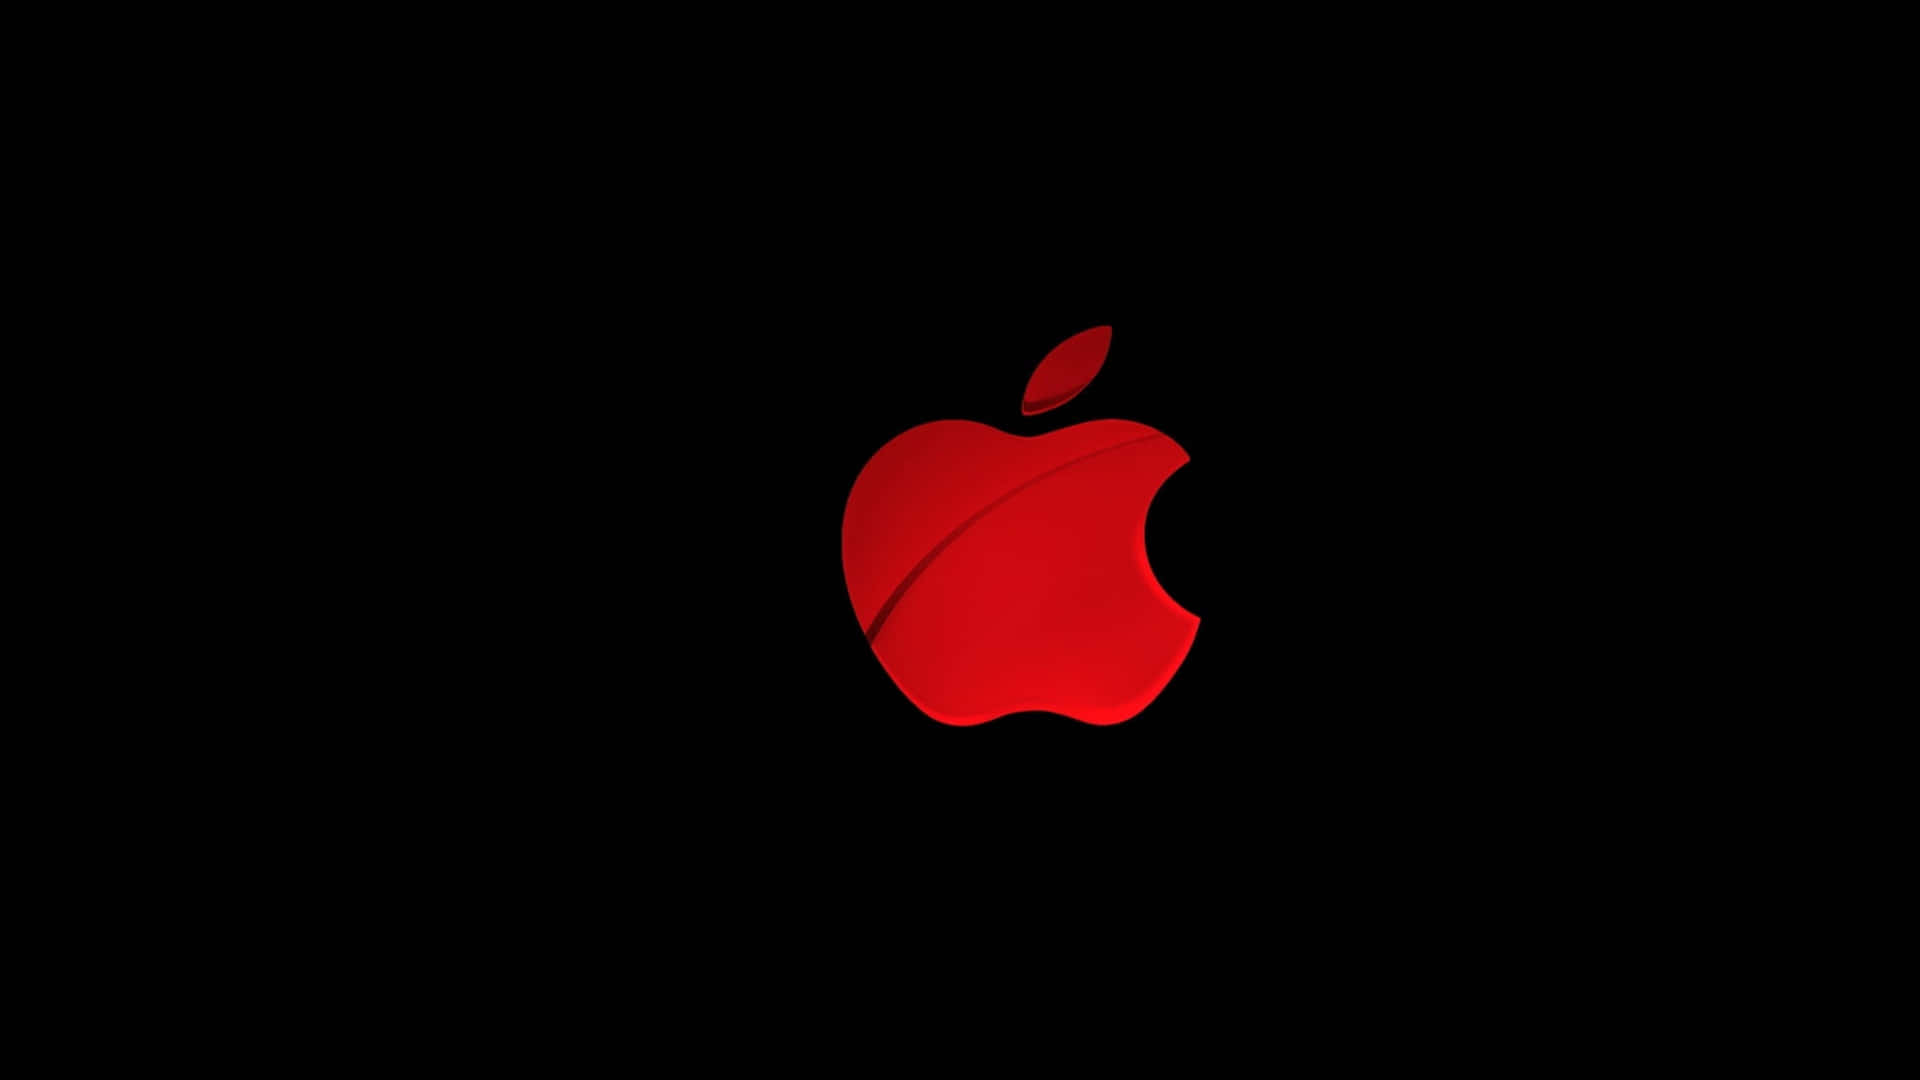 Apple Logo Wallpaper Hd